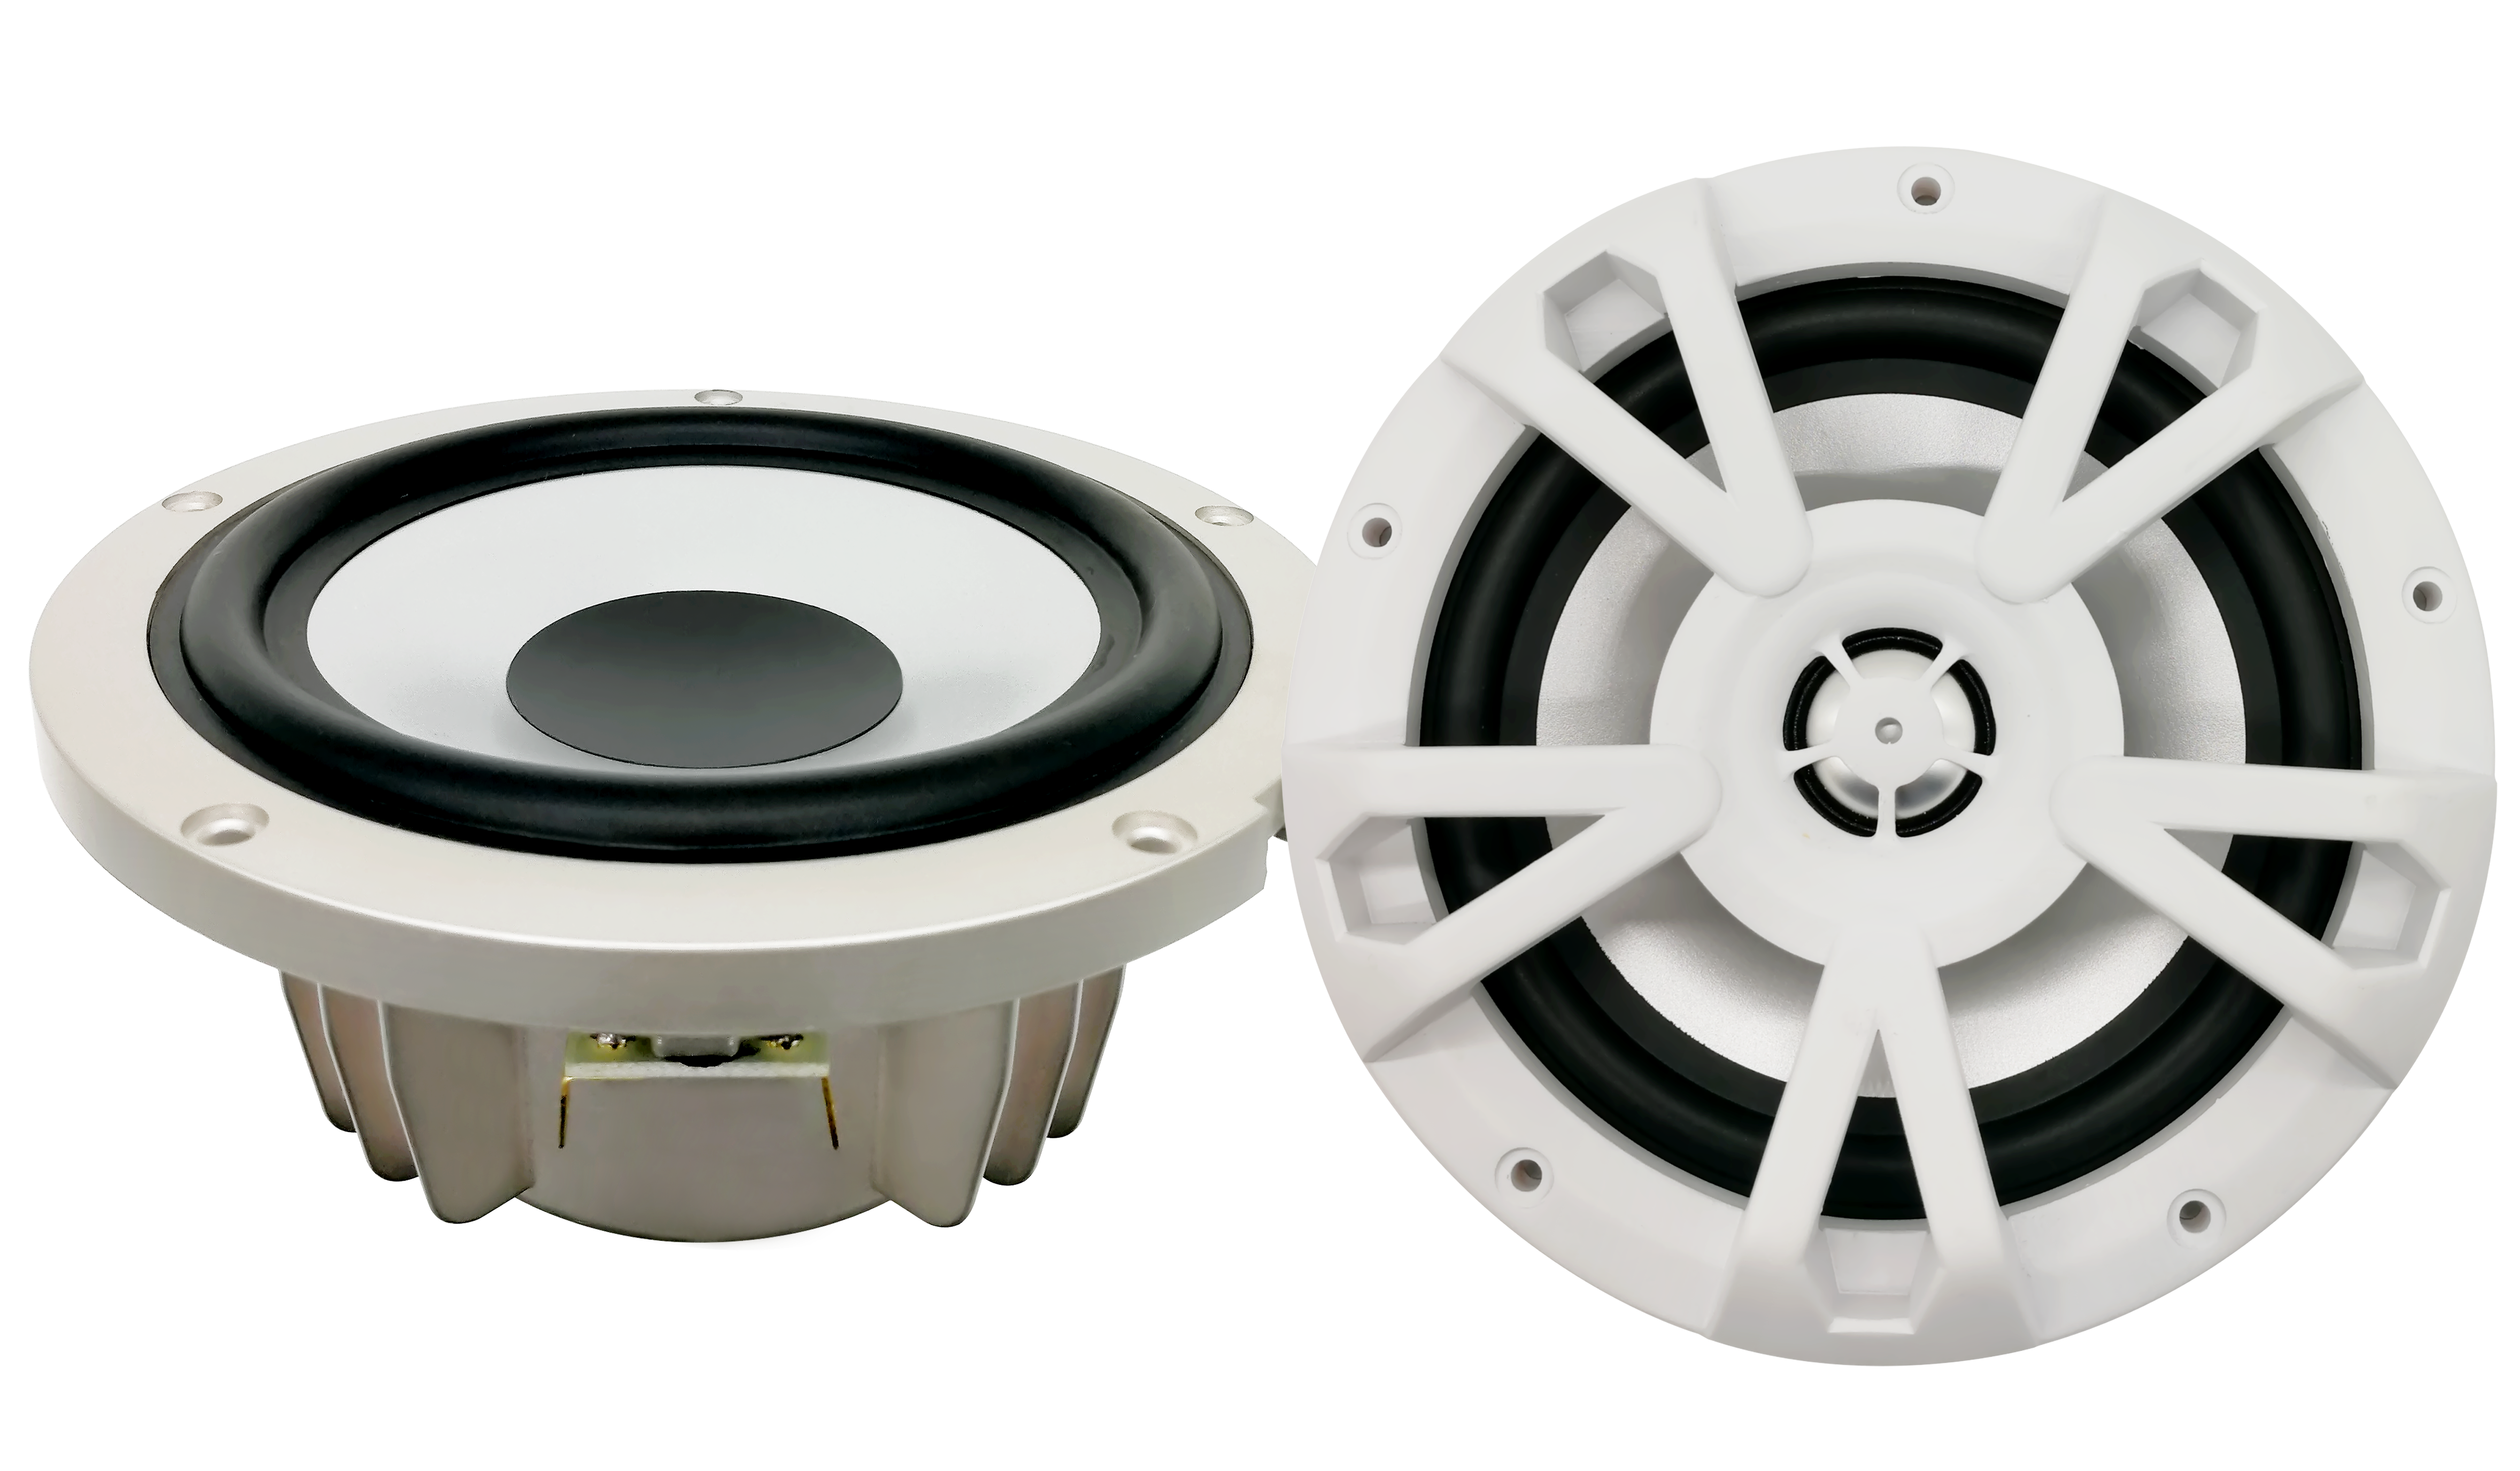 Marine speakers-8 inch 2-way boat speakers